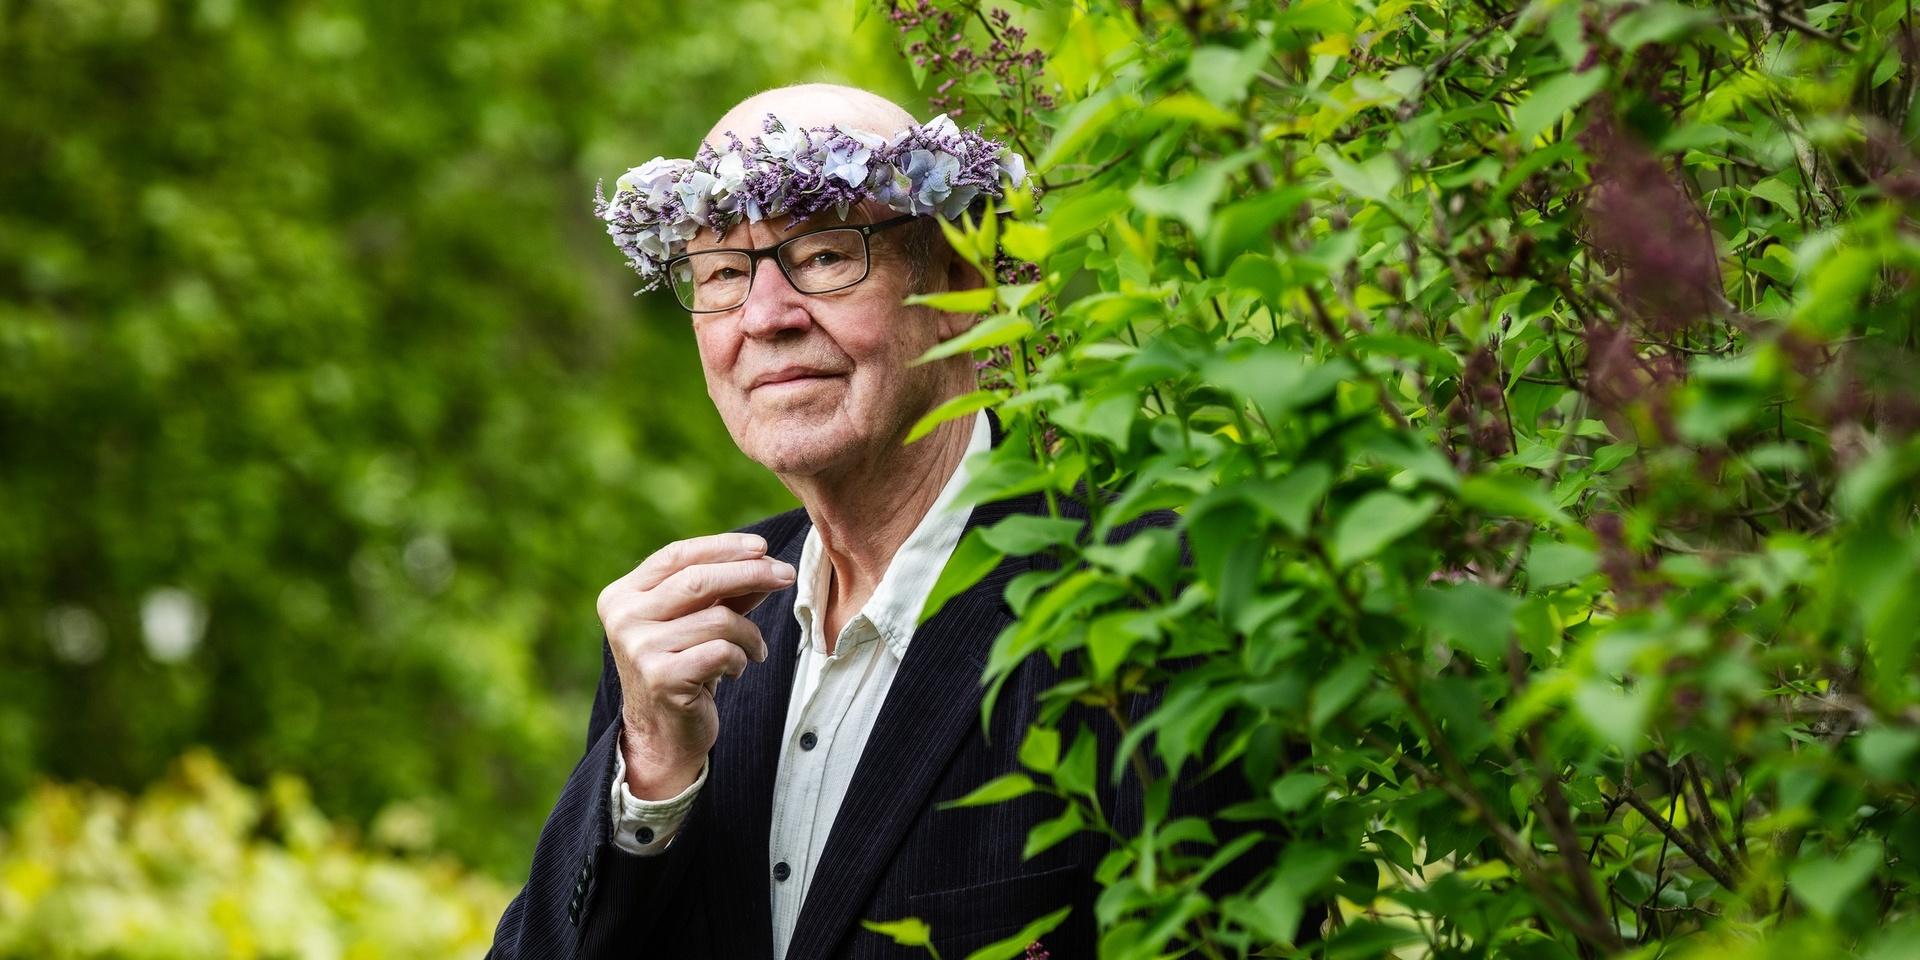 Sten Ljunggren poserar för Sommar i P1. Han har blomsterkrans, glasögon, vit skjorta och mörk kavaj. 